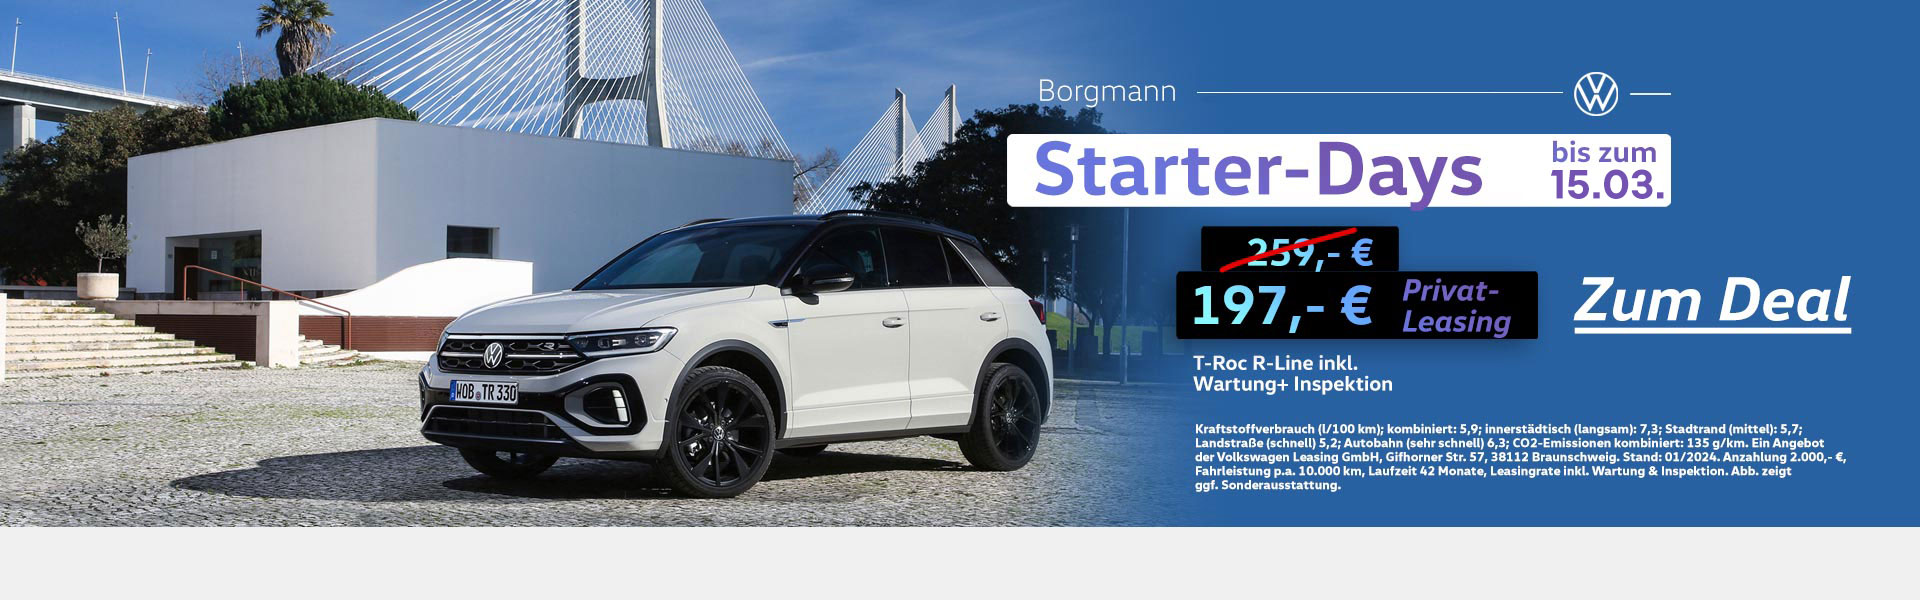 VW Touran kaufen im Autohaus Borgmann